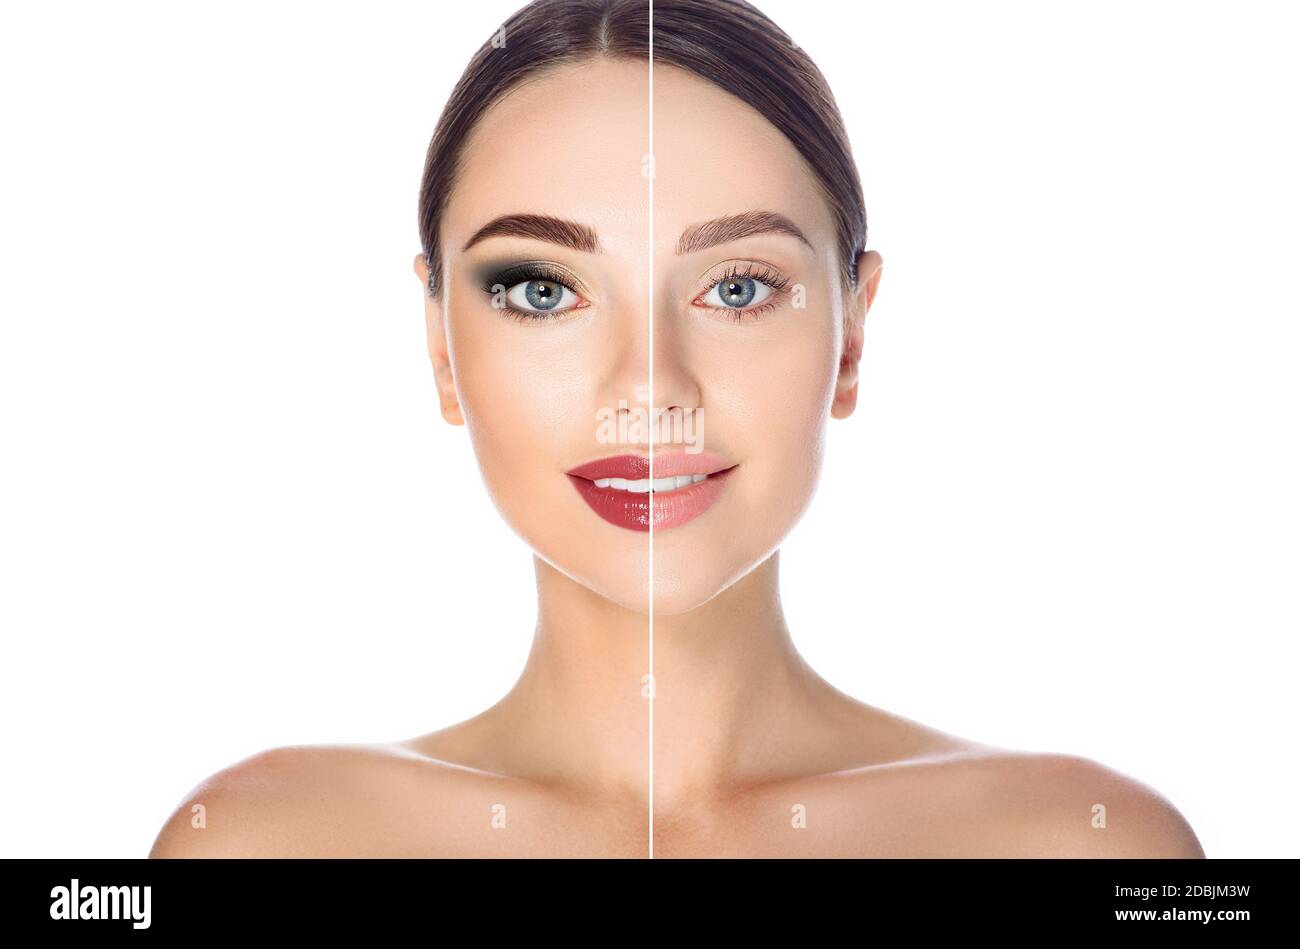 Vor und nach dem Entfernen von Make-up. Frau Gesicht mit Make-up und ohne auf weißem Hintergrund Stockfoto